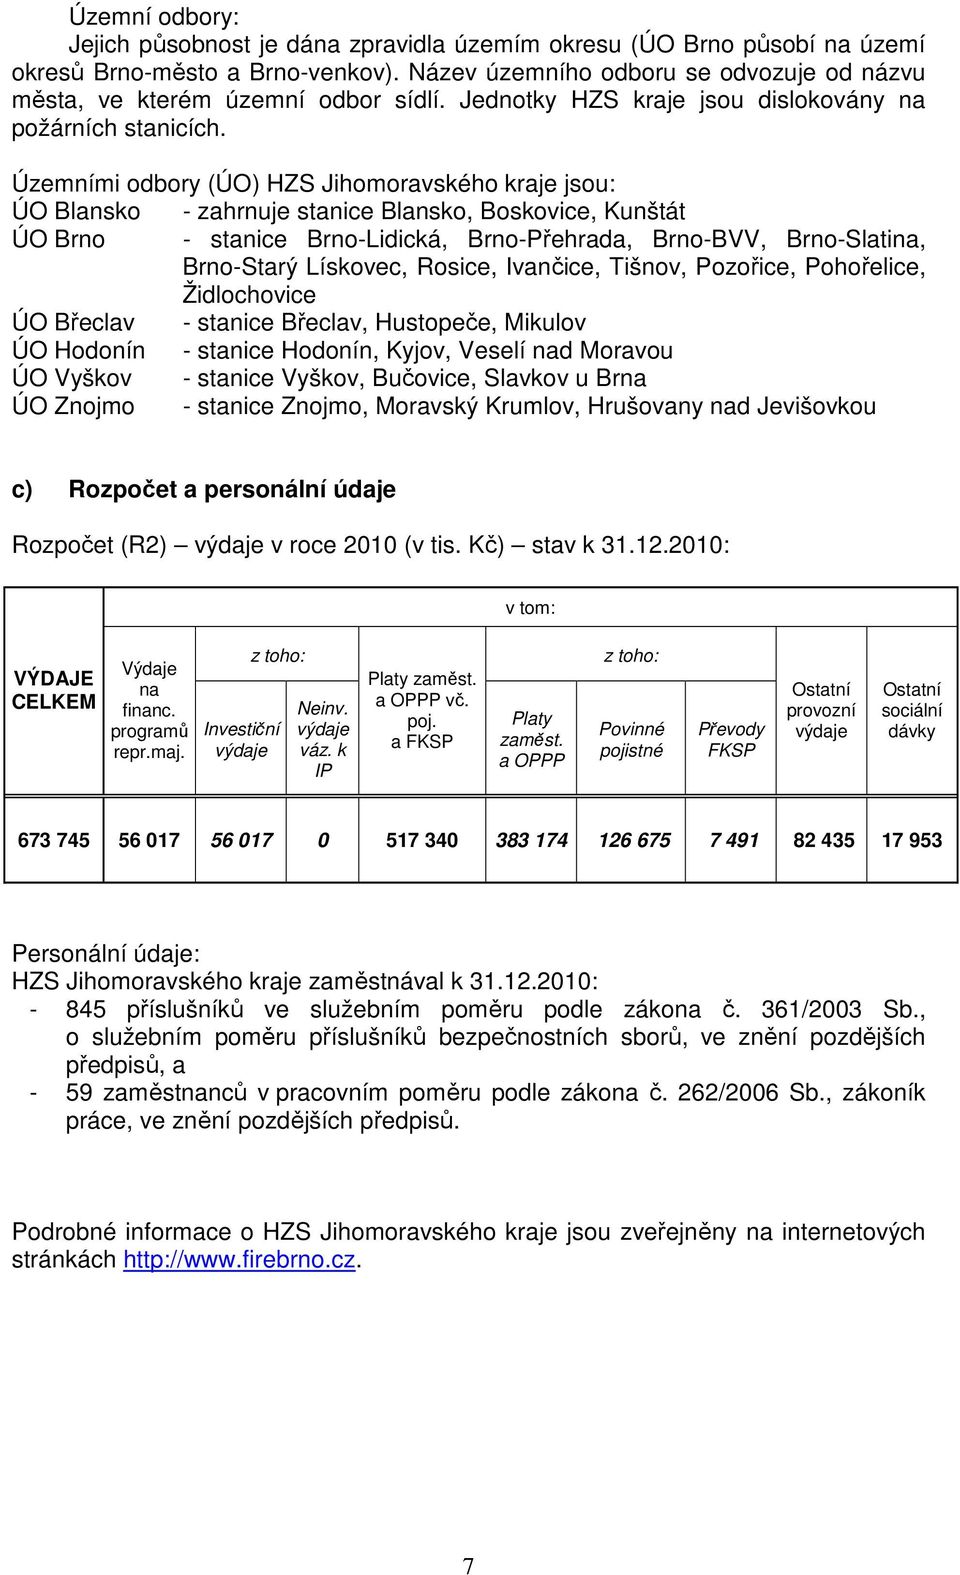 Územními odbory (ÚO) HZS Jihomoravského kraje jsou: ÚO Blansko - zahrnuje stanice Blansko, Boskovice, Kunštát ÚO Brno - stanice Brno-Lidická, Brno-Přehrada, Brno-BVV, Brno-Slatina, Brno-Starý